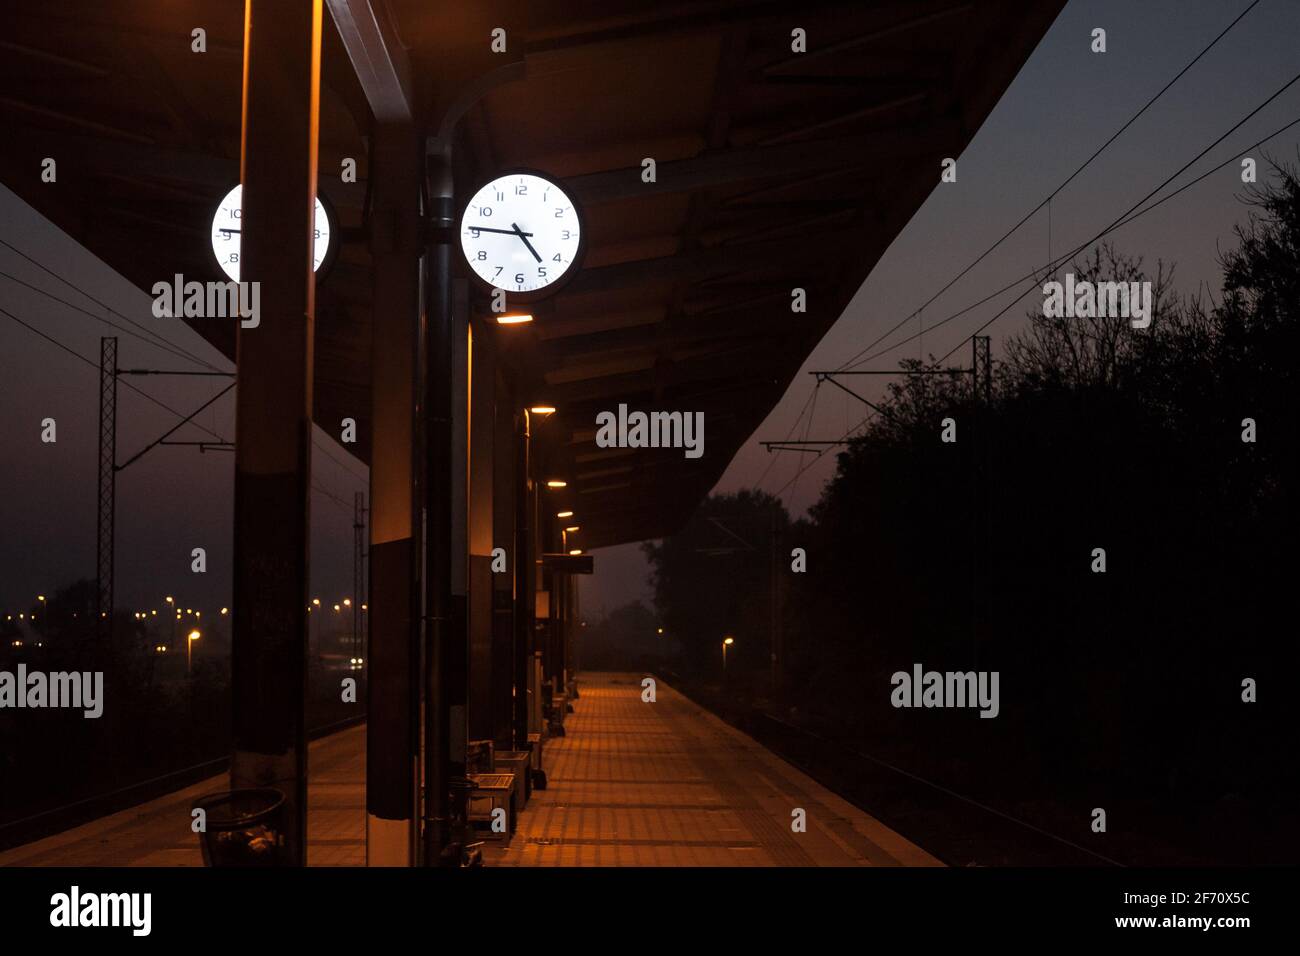 Orologio analogico sulla piattaforma di una stazione ferroviaria centrale di notte, durante una sera di tramonto buio, che indica l'orario preciso, di fronte a una t deserta Foto Stock